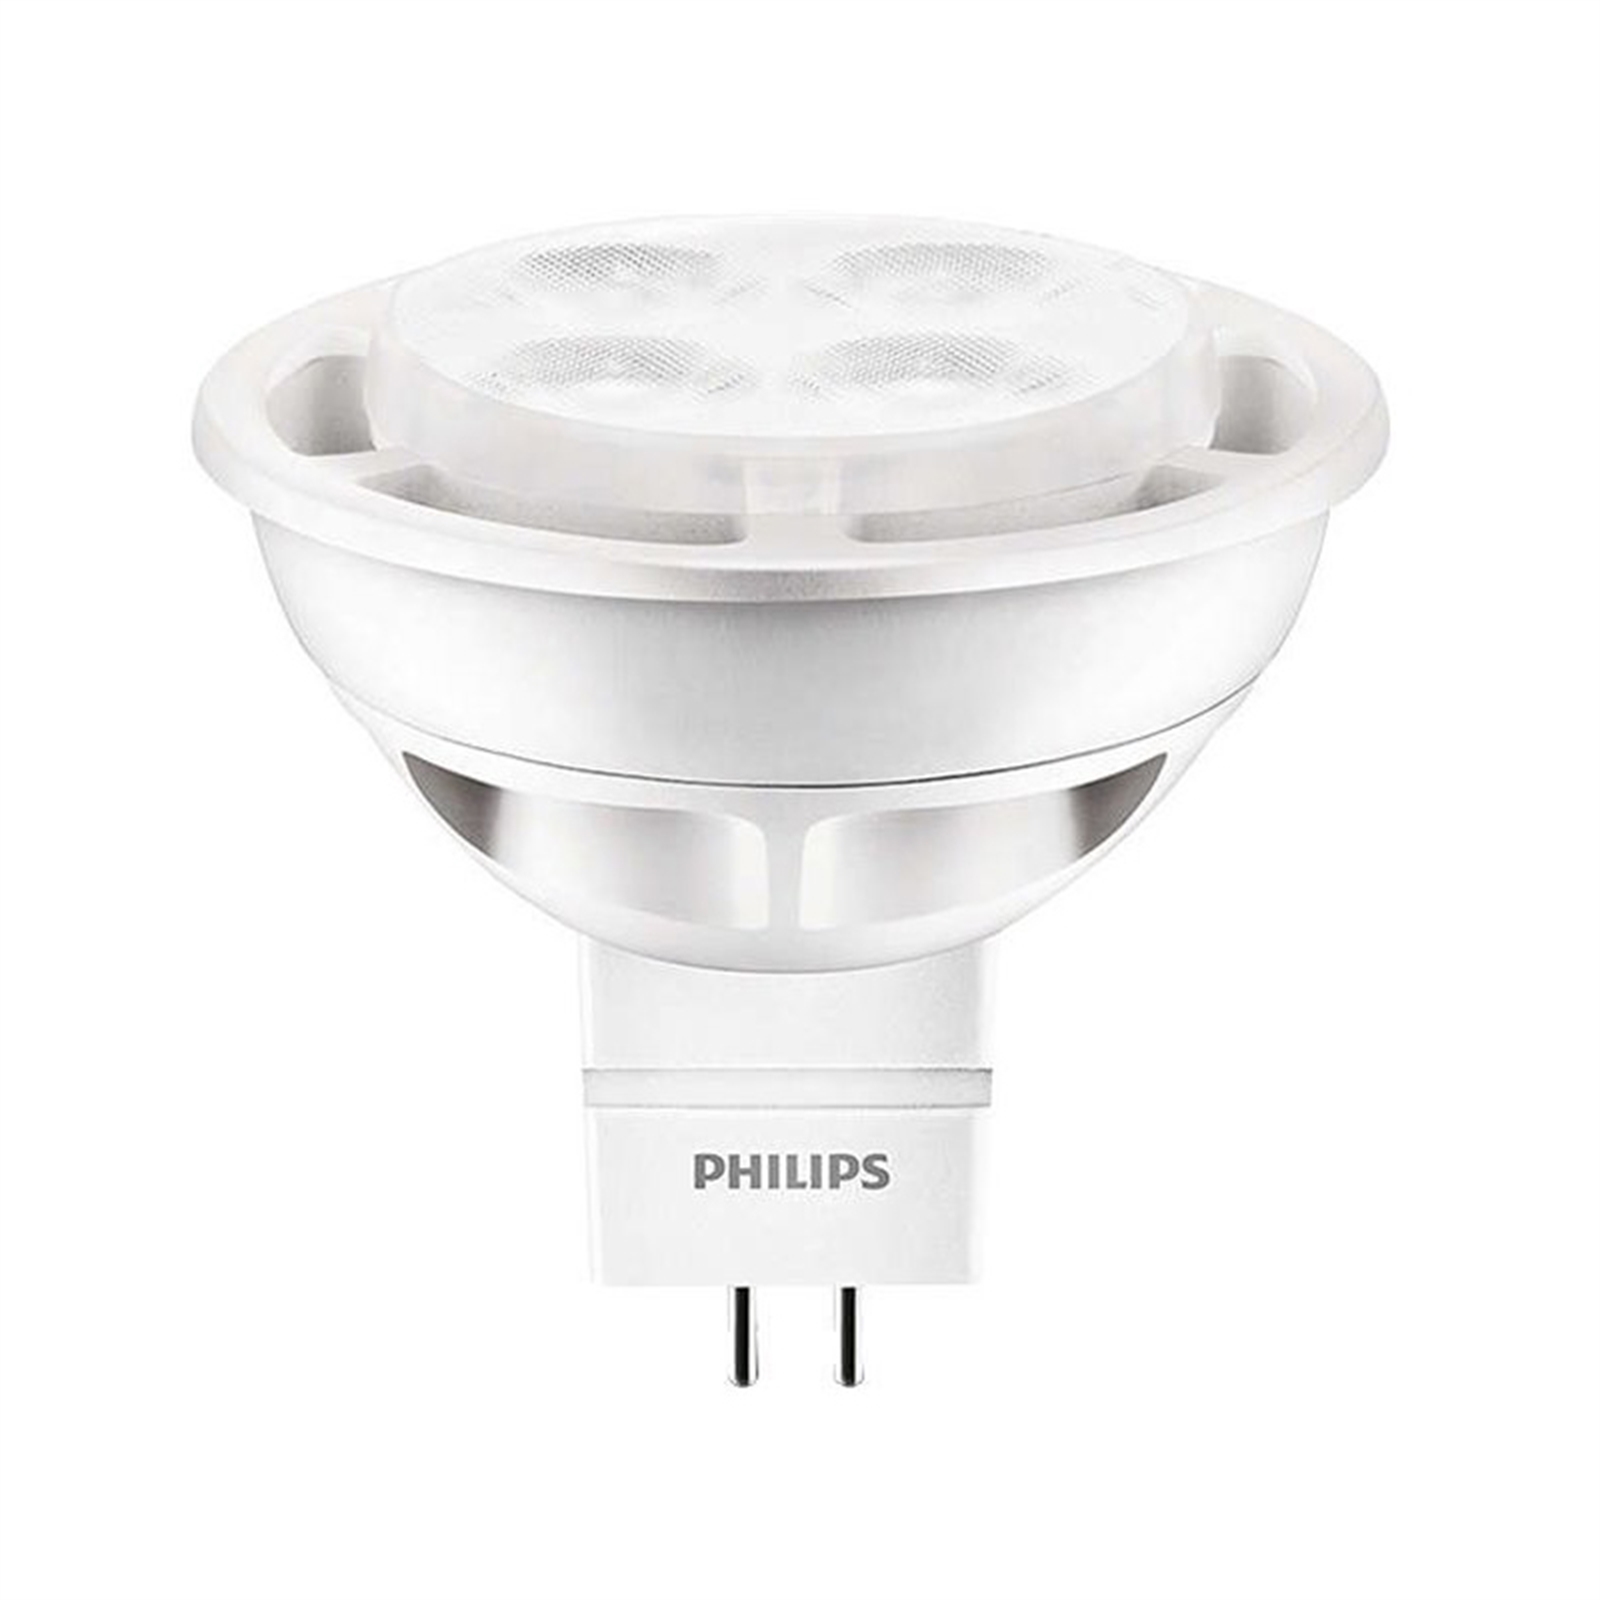 Philips 5.5W MR16 LED Globe